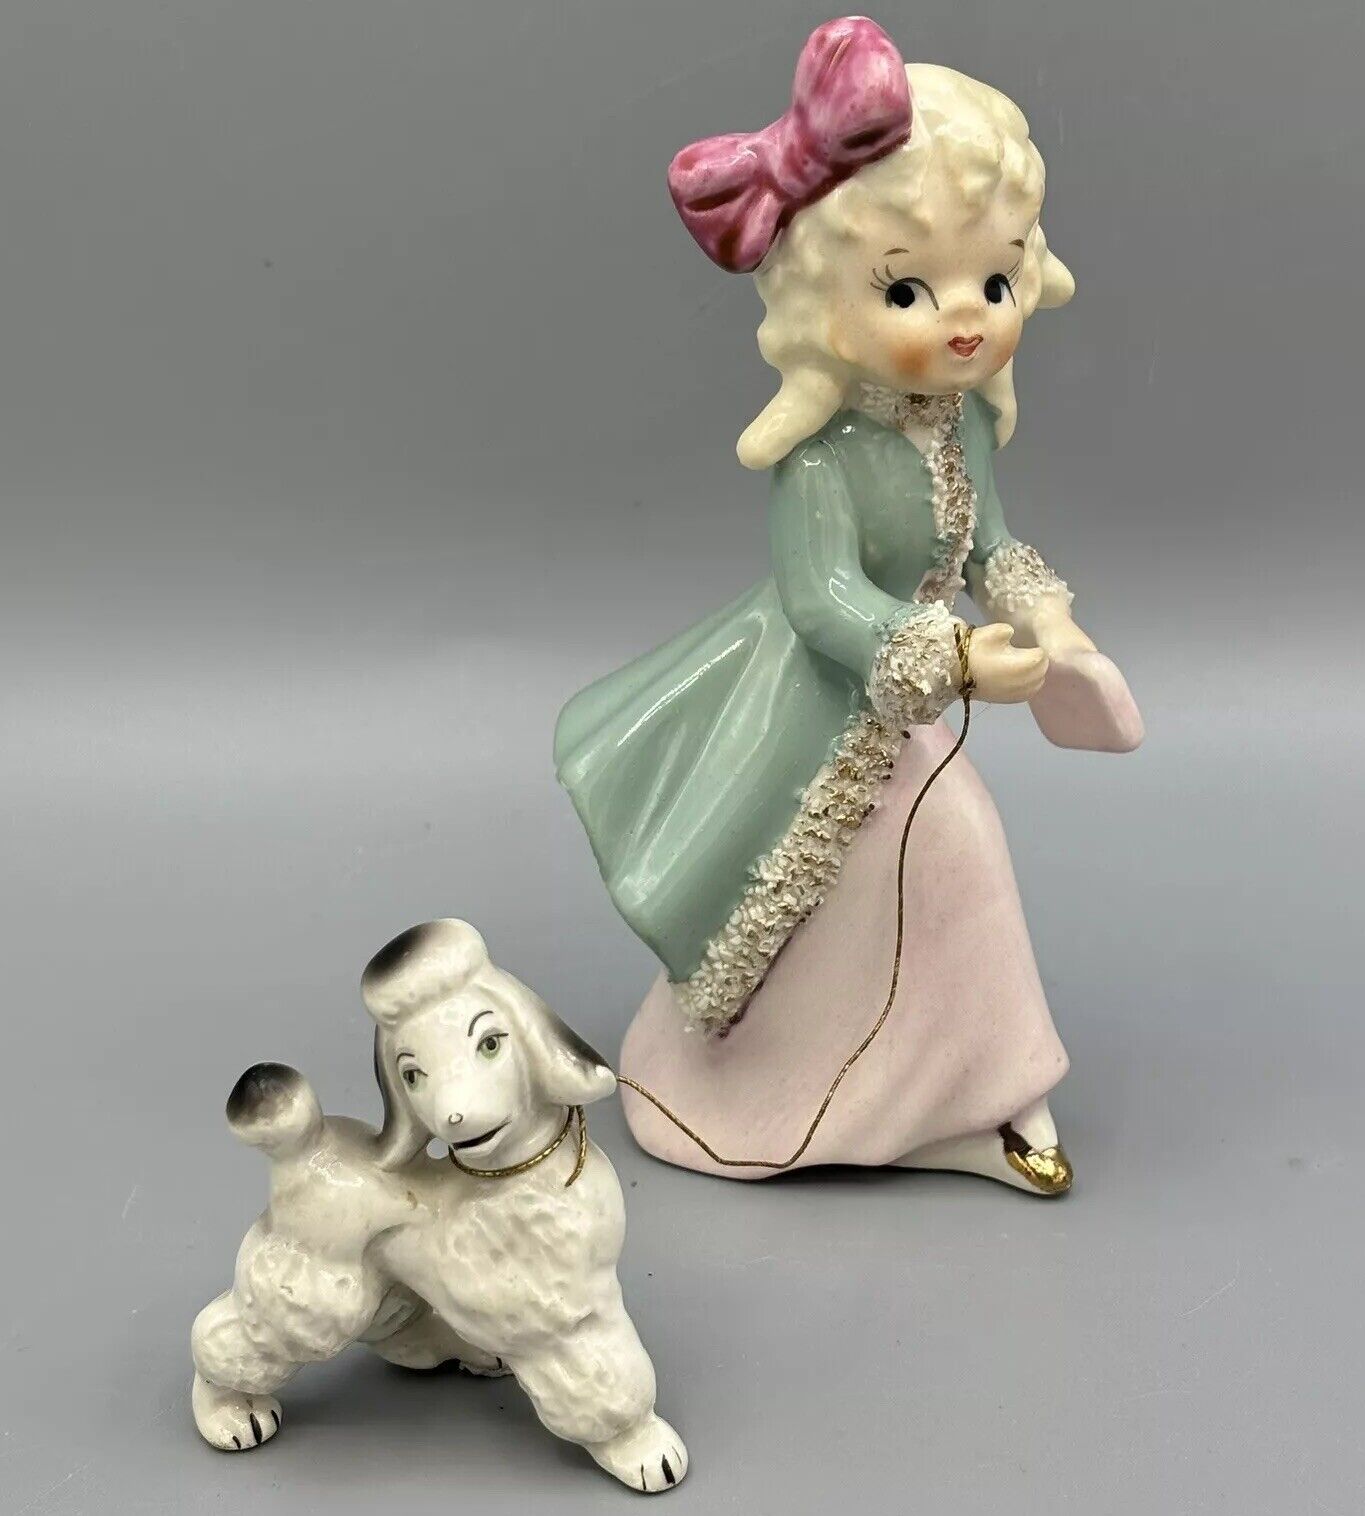 Vintage Mid Century Porcelain Figurine Girl  poodle on Leash Japan 5” Spaghetti